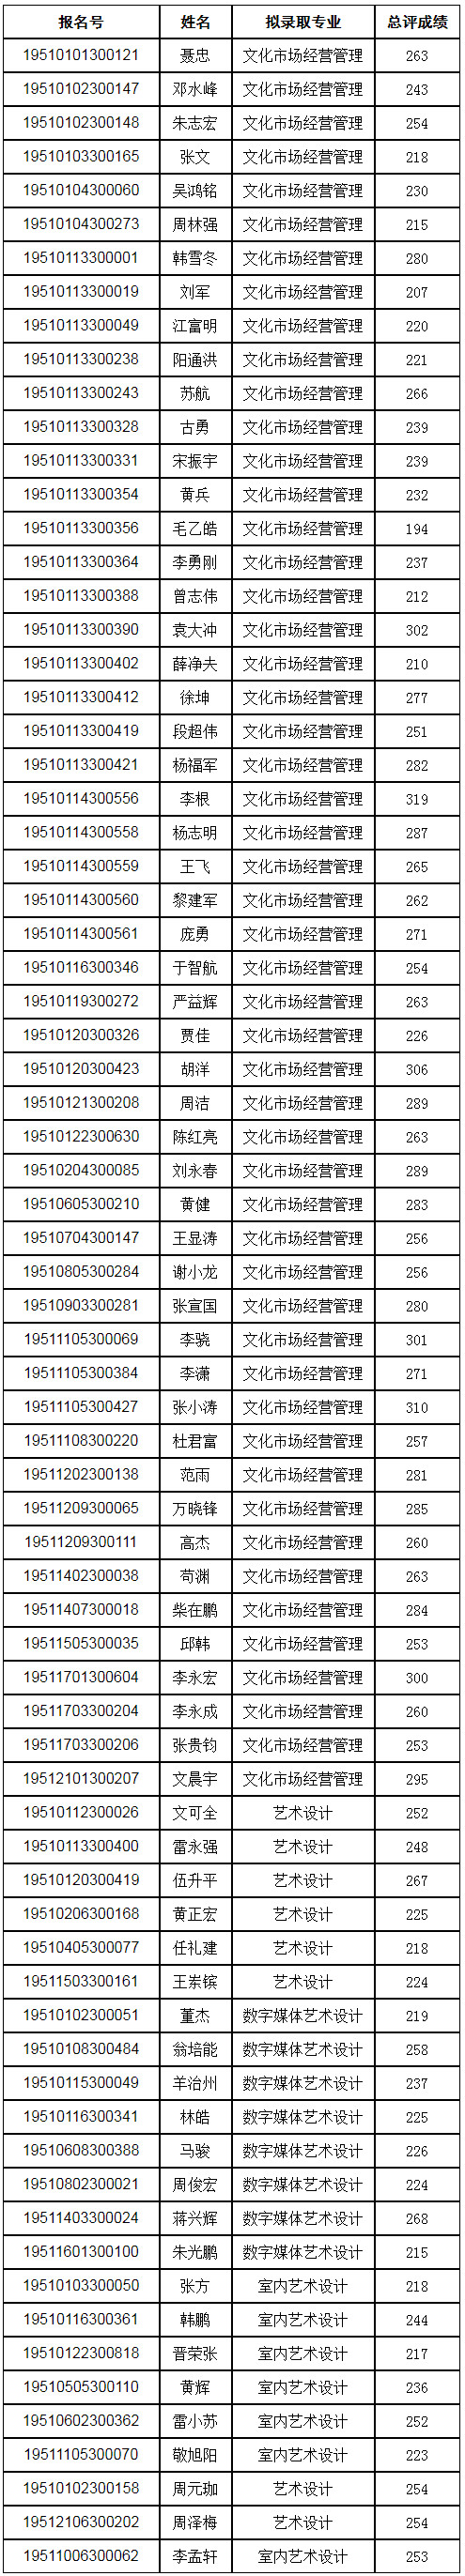 四川艺术职业学院2019年退役军人等群体人员招生考试成绩及拟录取专业.jpg